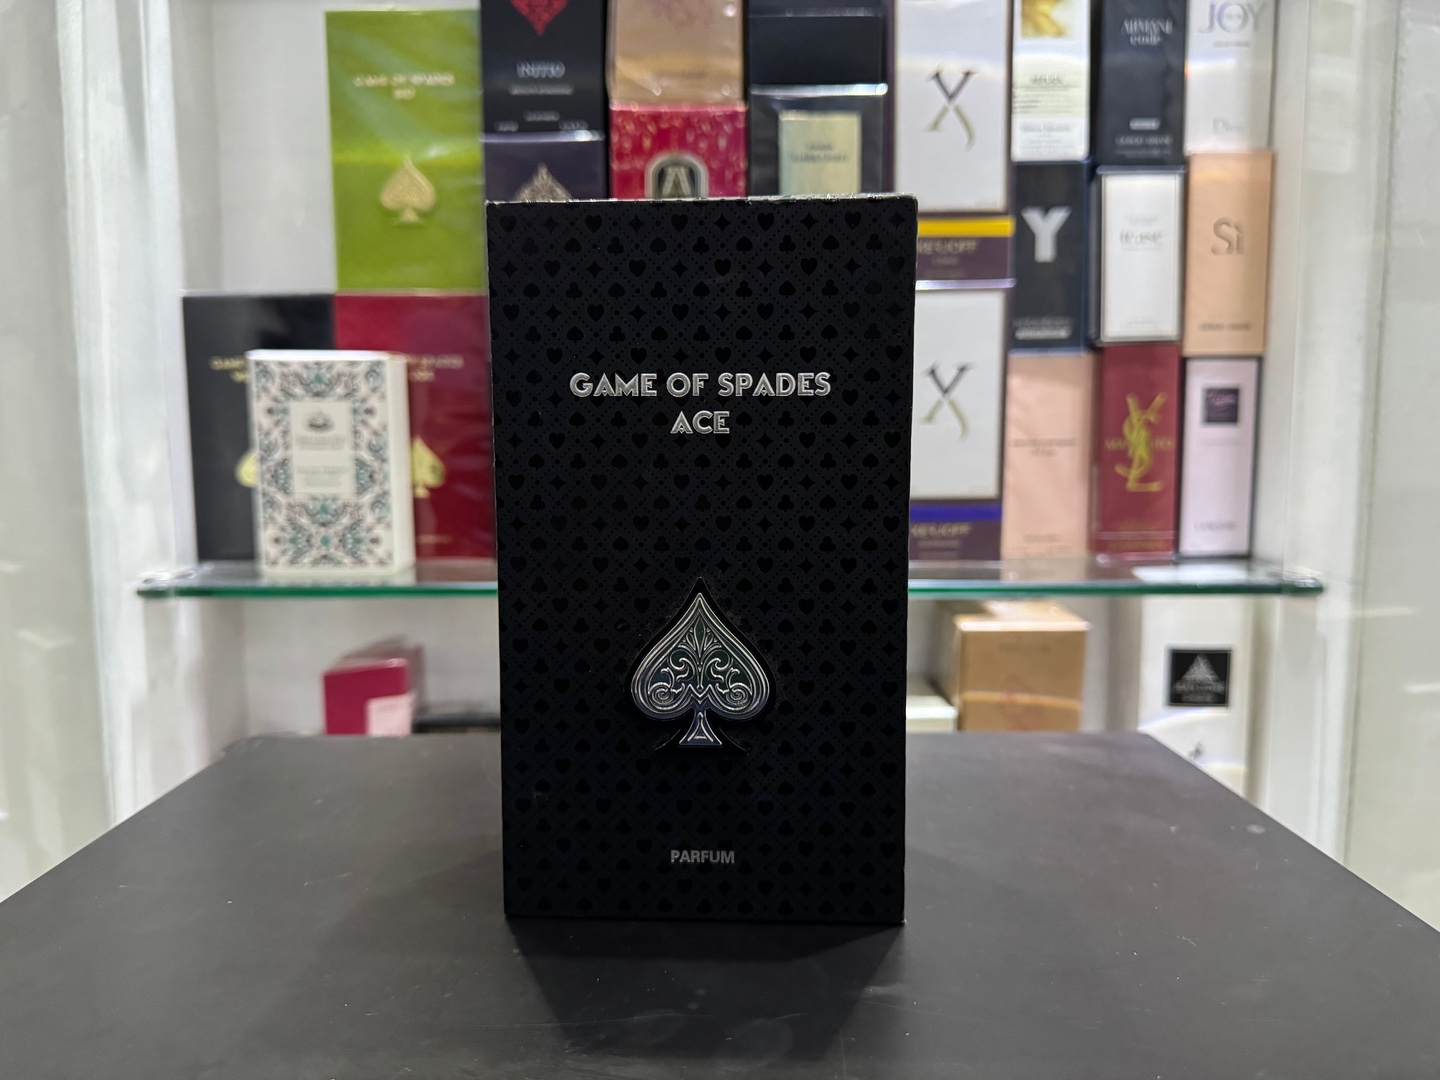 joyas, relojes y accesorios - Perfume Jo Milano Paris Game Of Spades Ace Nuevo,Original RD$ 5,500 NEG 0